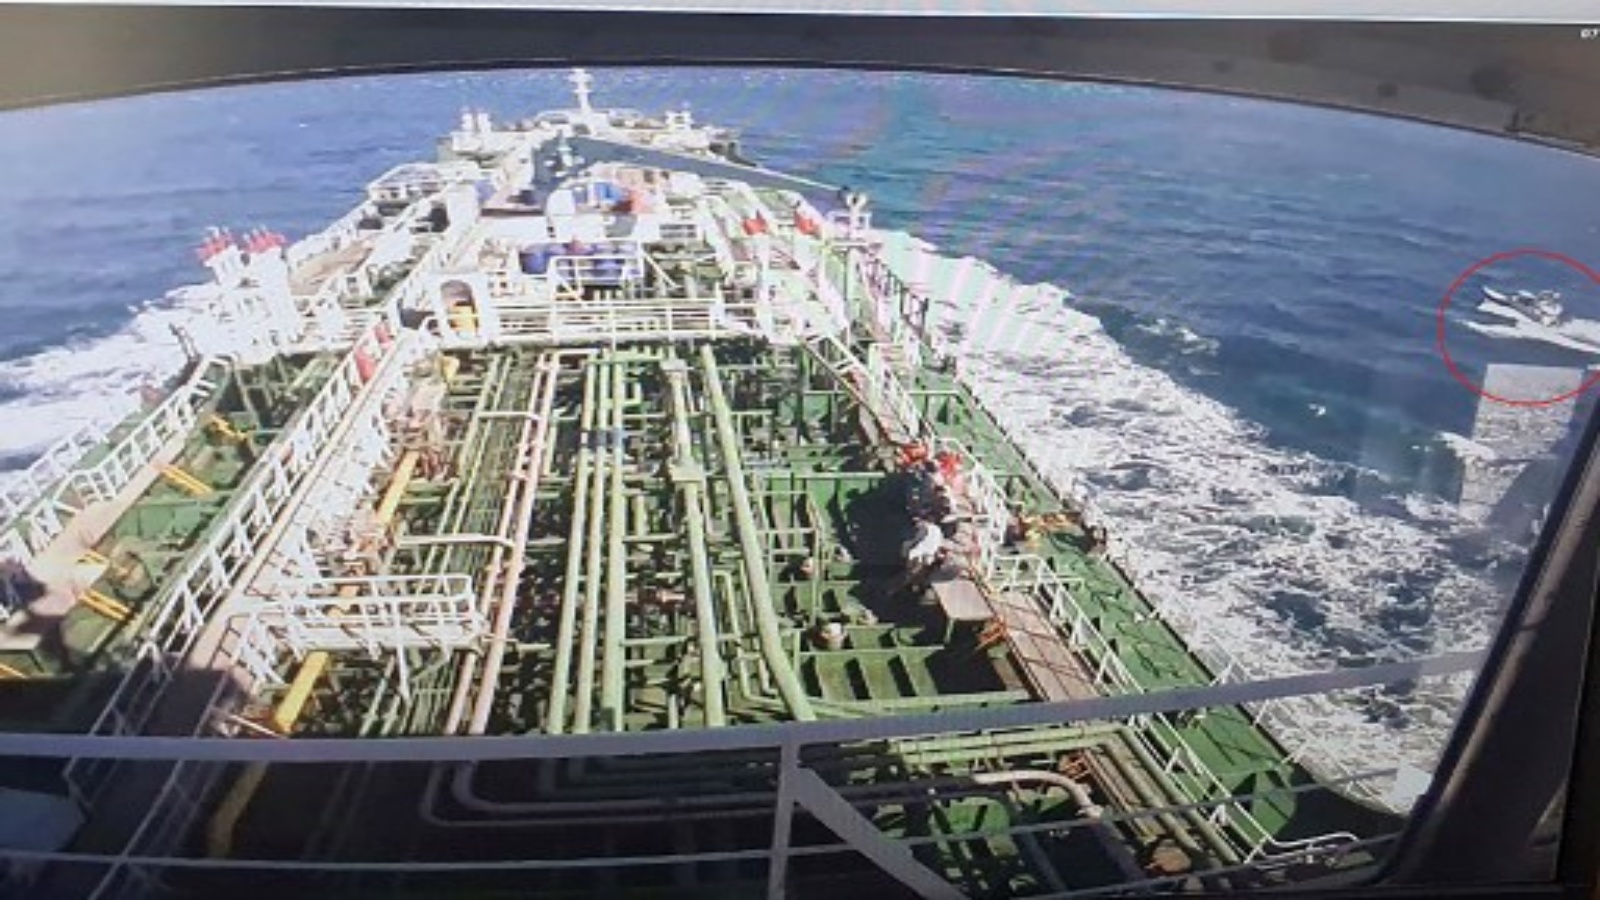 لقطات كاميرات المراقبة لناقلة النفط Hankuk Chemi ، وهي ناقلة نفط ترفع علم كوريا الجنوبية ، على شاشة بينما يظهر قارب الحرس الثوري الإيراني في دائرة حمراء على الشاشة في شركة DM Shipping المالكة للناقلة ، في بوسان في 4 يناير ، 2021